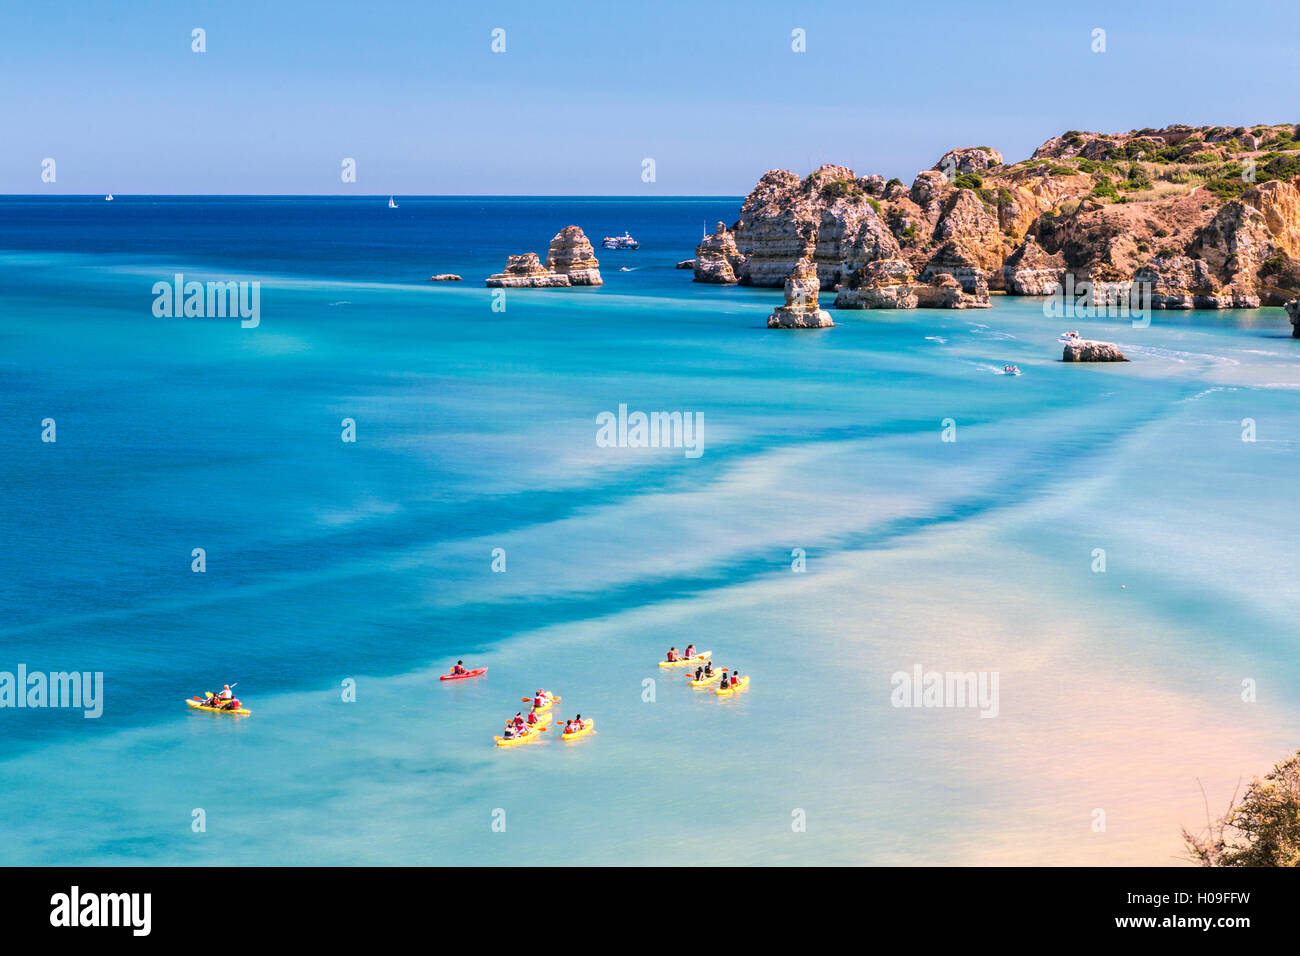 Canoa nelle acque turchesi dell'Oceano Atlantico che circondano Praia Dona Ana beach, Lagos, Algarve, Portogallo, Europa Foto Stock